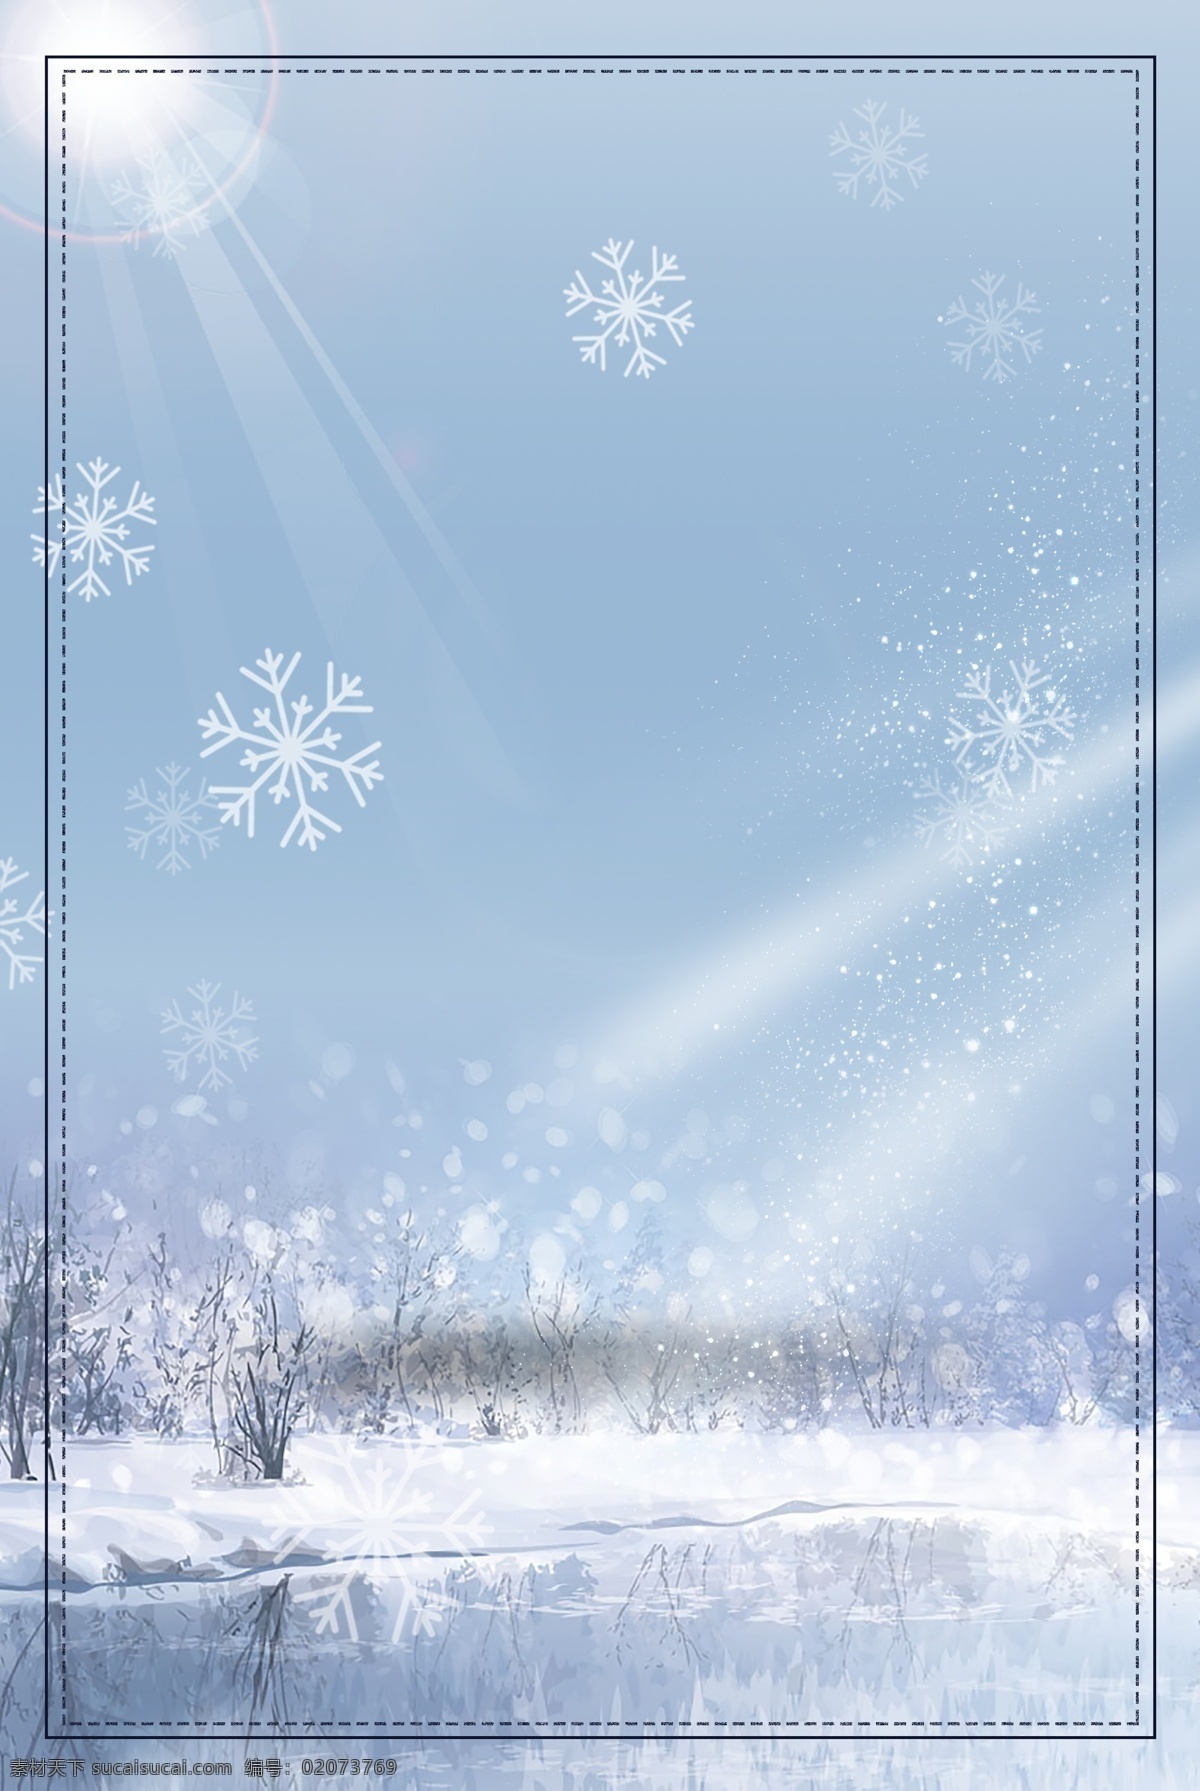 卡通 冬至 节气 雪地 背景 唯美 简约 蓝色 冬天 冬至背景 下雪 冬至节气 传统节气